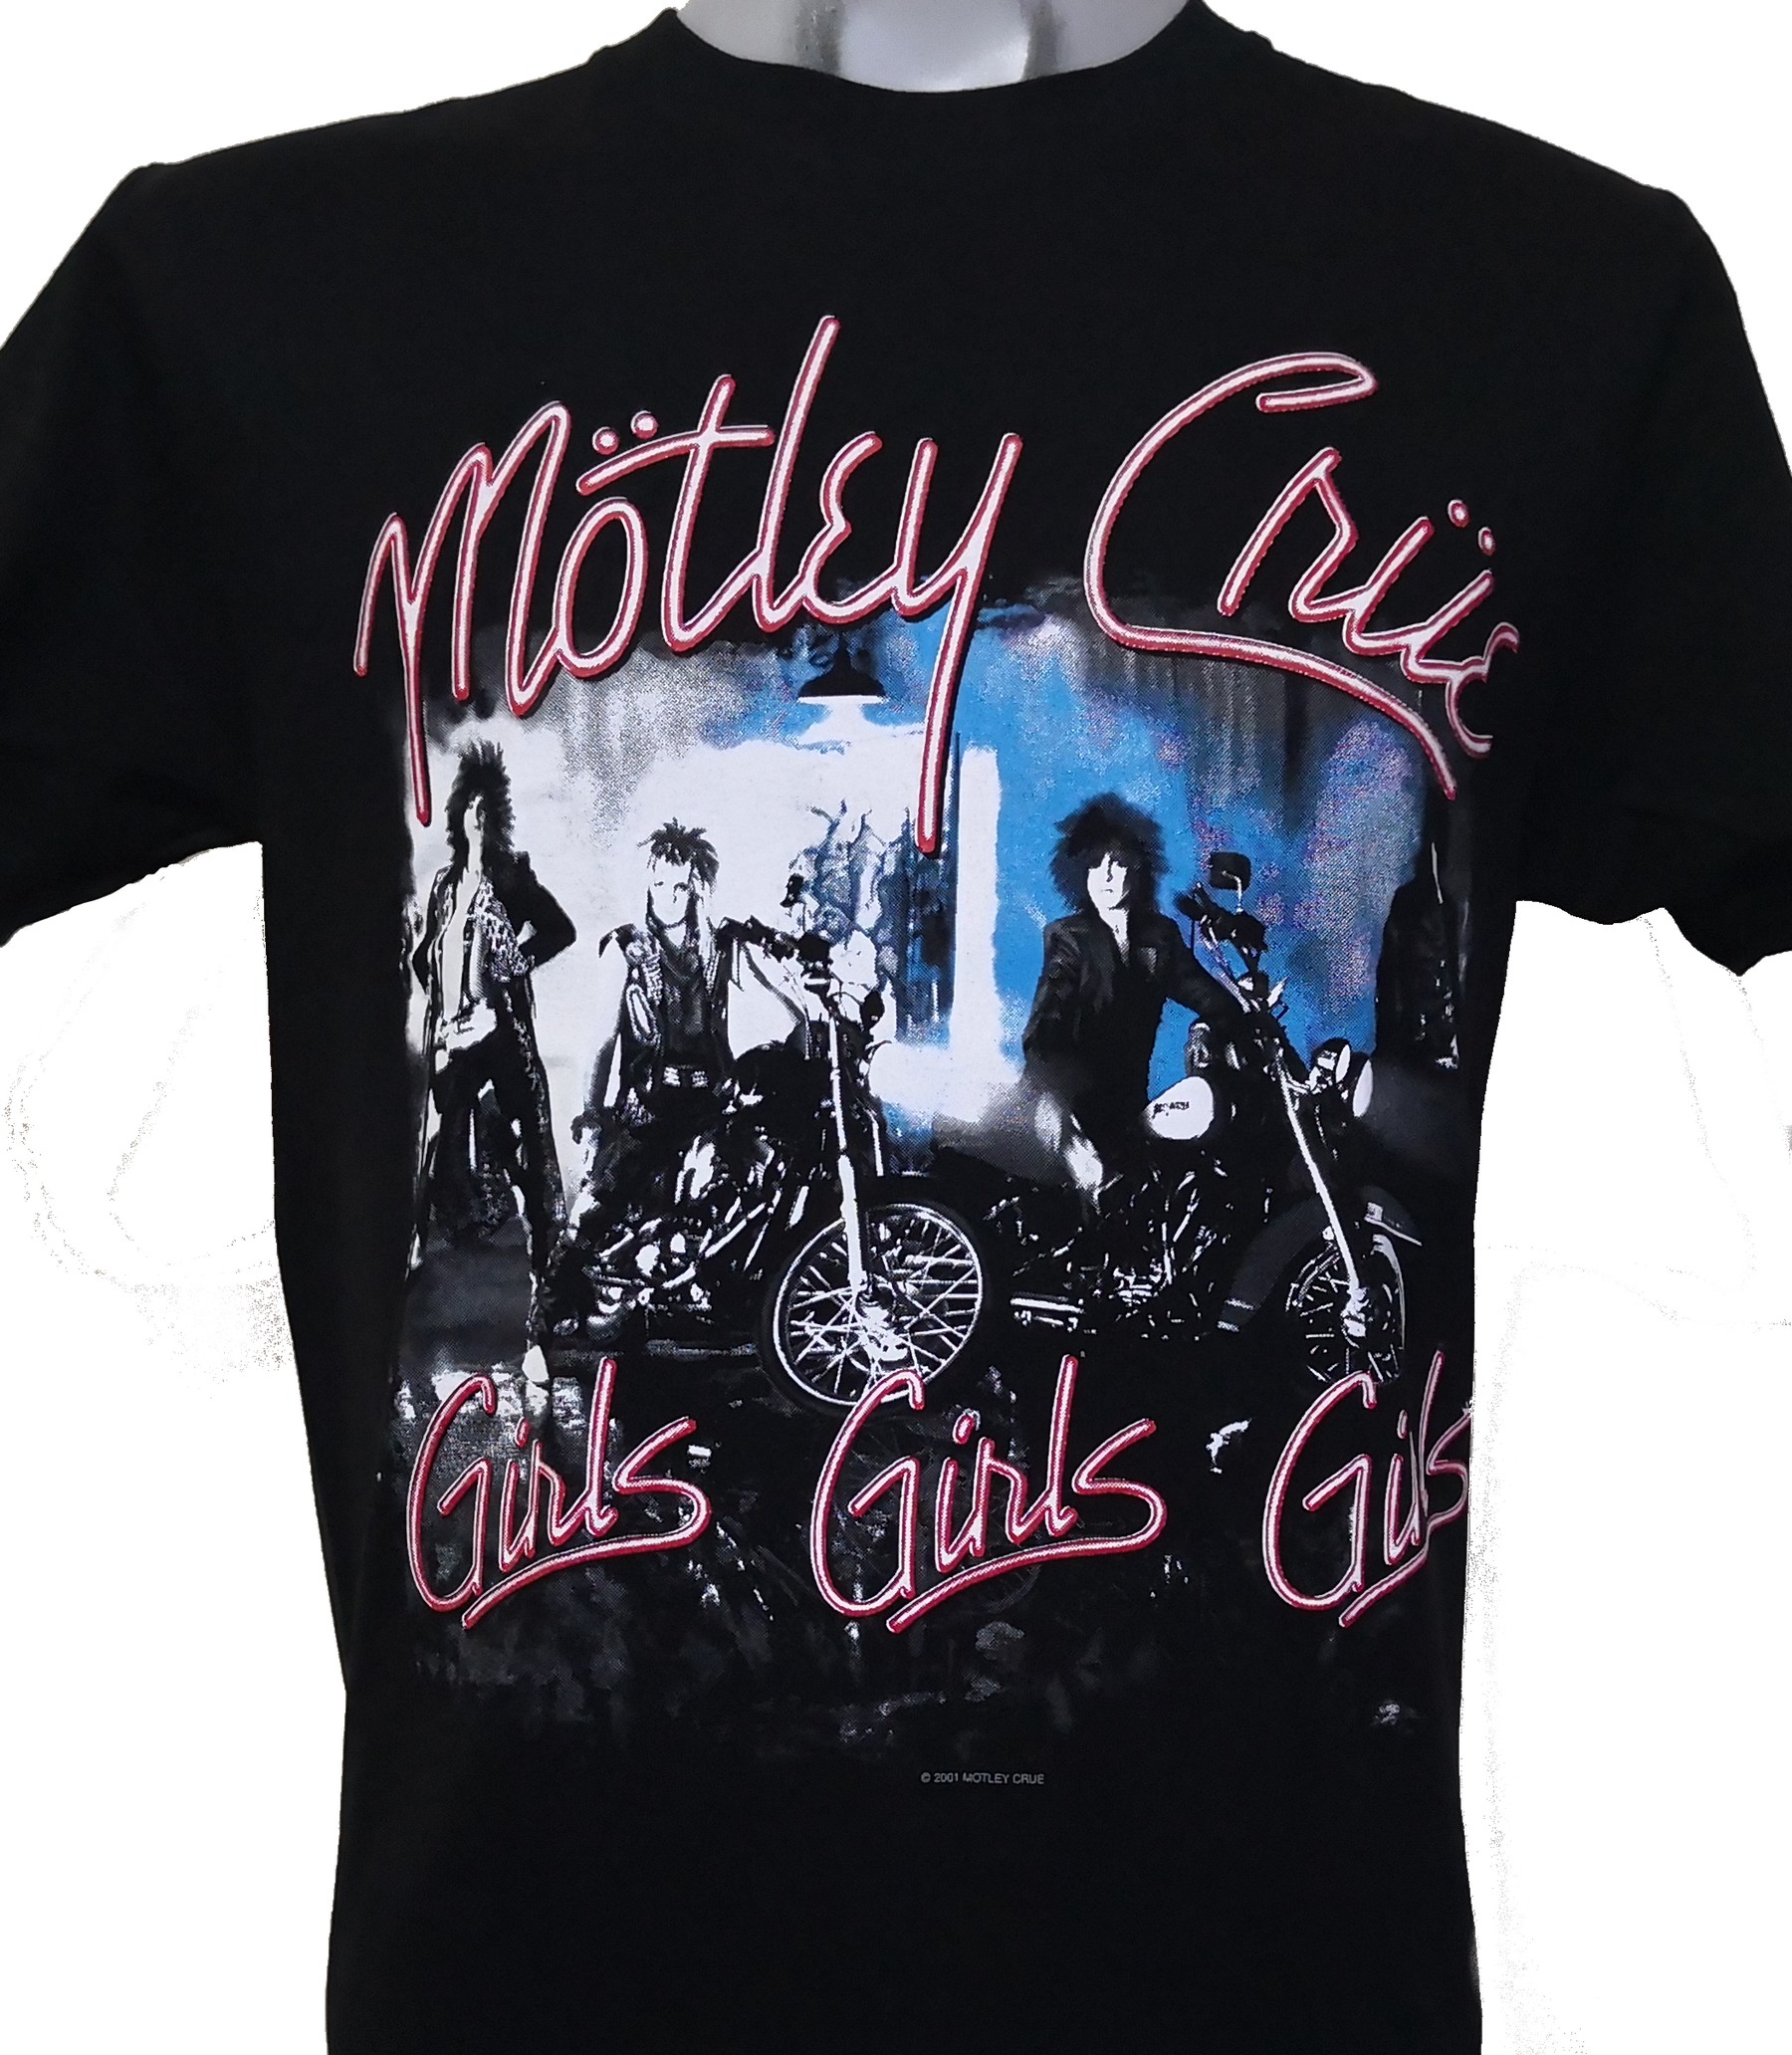 Girls Girls Children T Shirts Short Sleeve Tees Boys Girls MoiqhHUswss Motley Crue Girls 